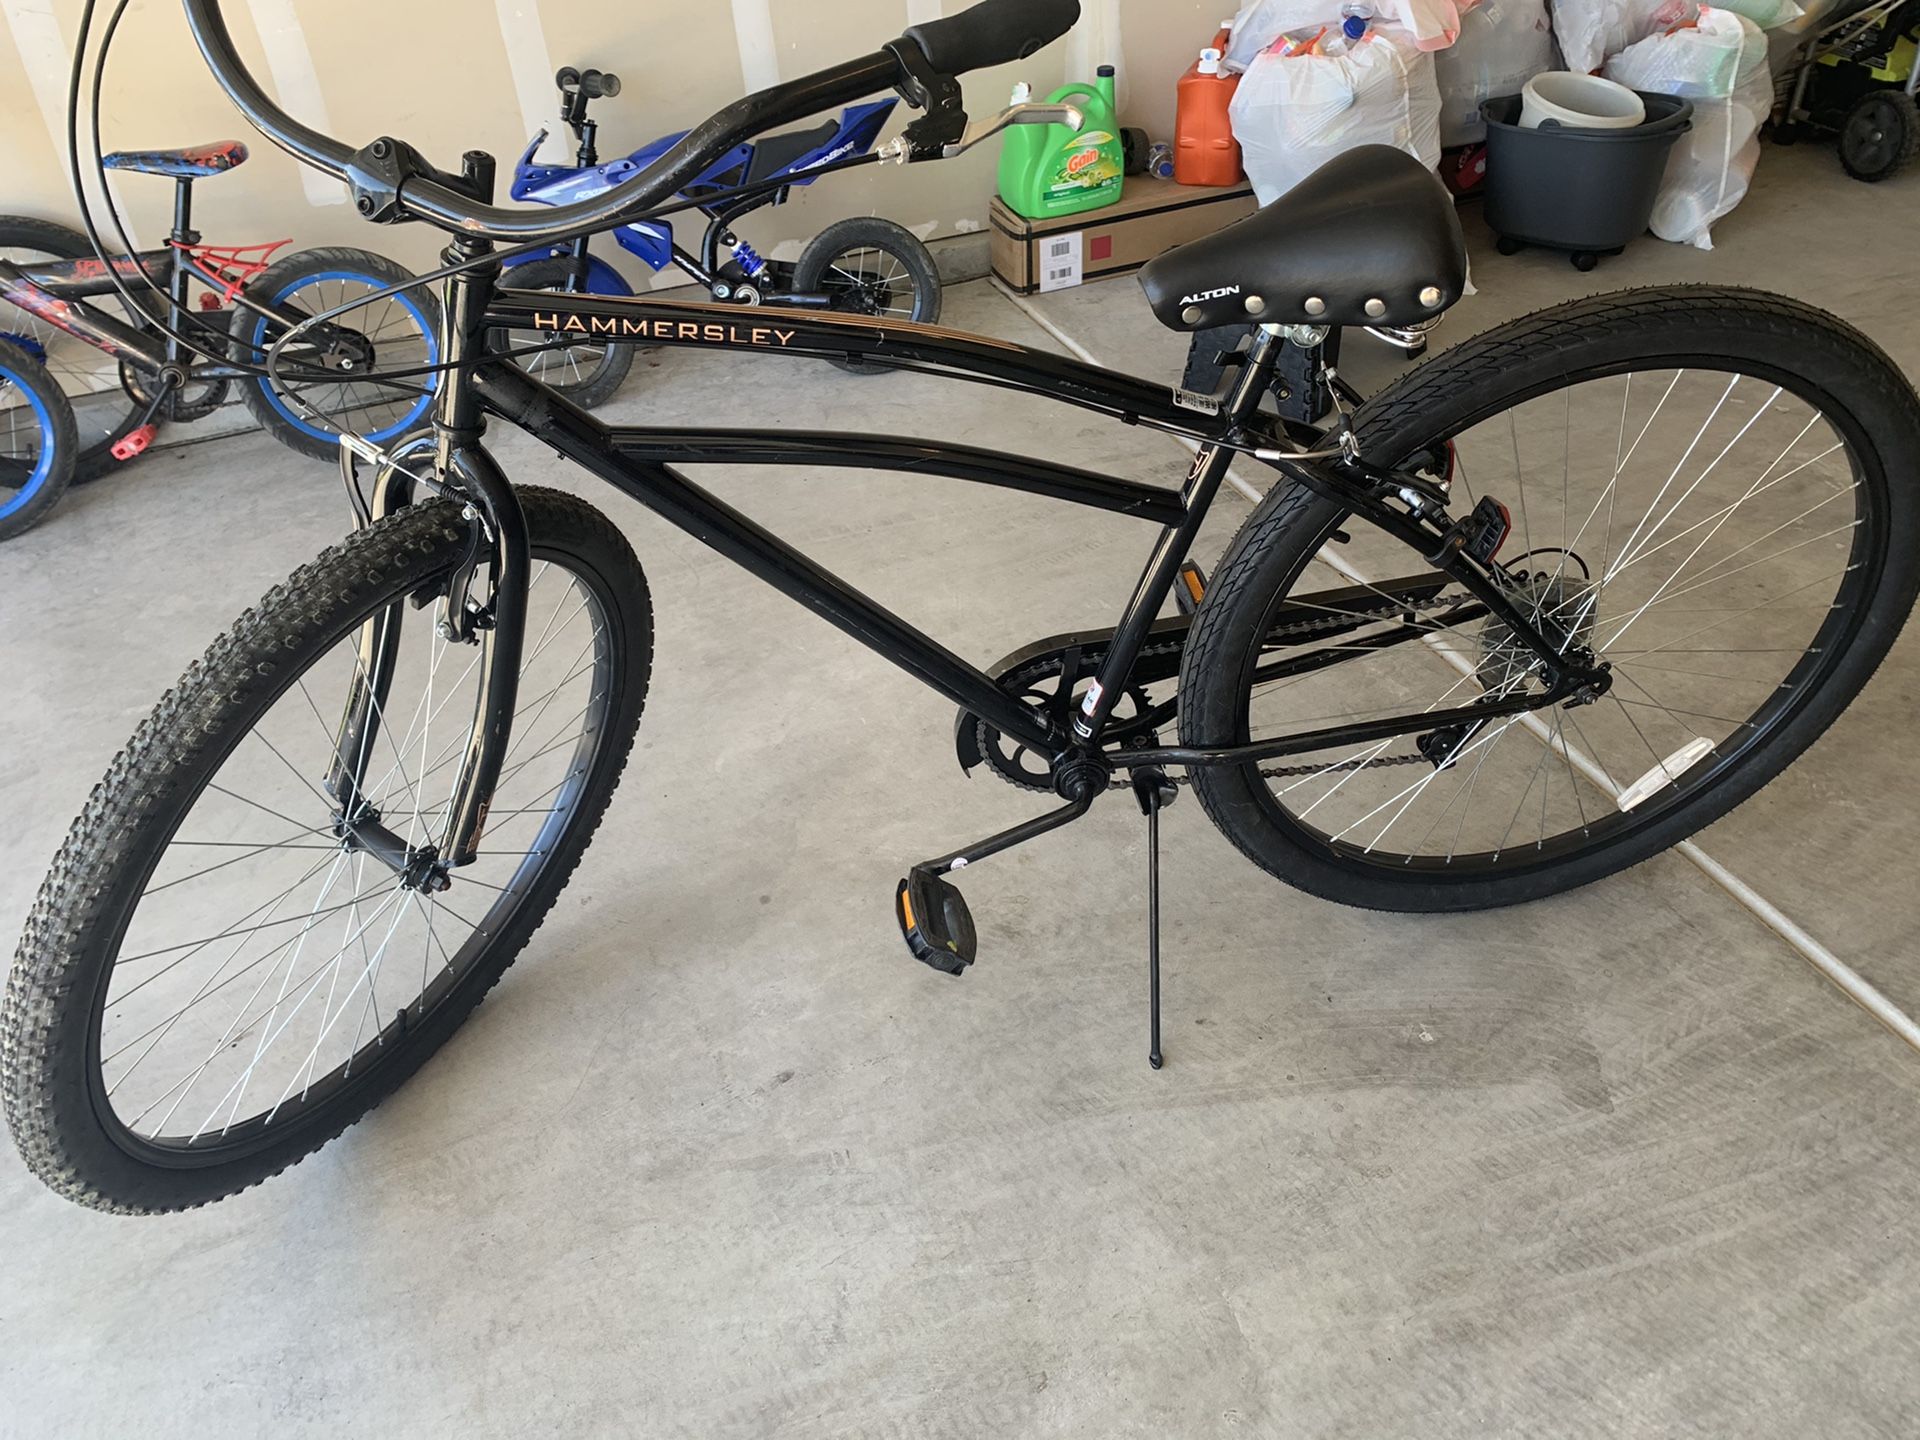 29” Schwinn Hammersley bike